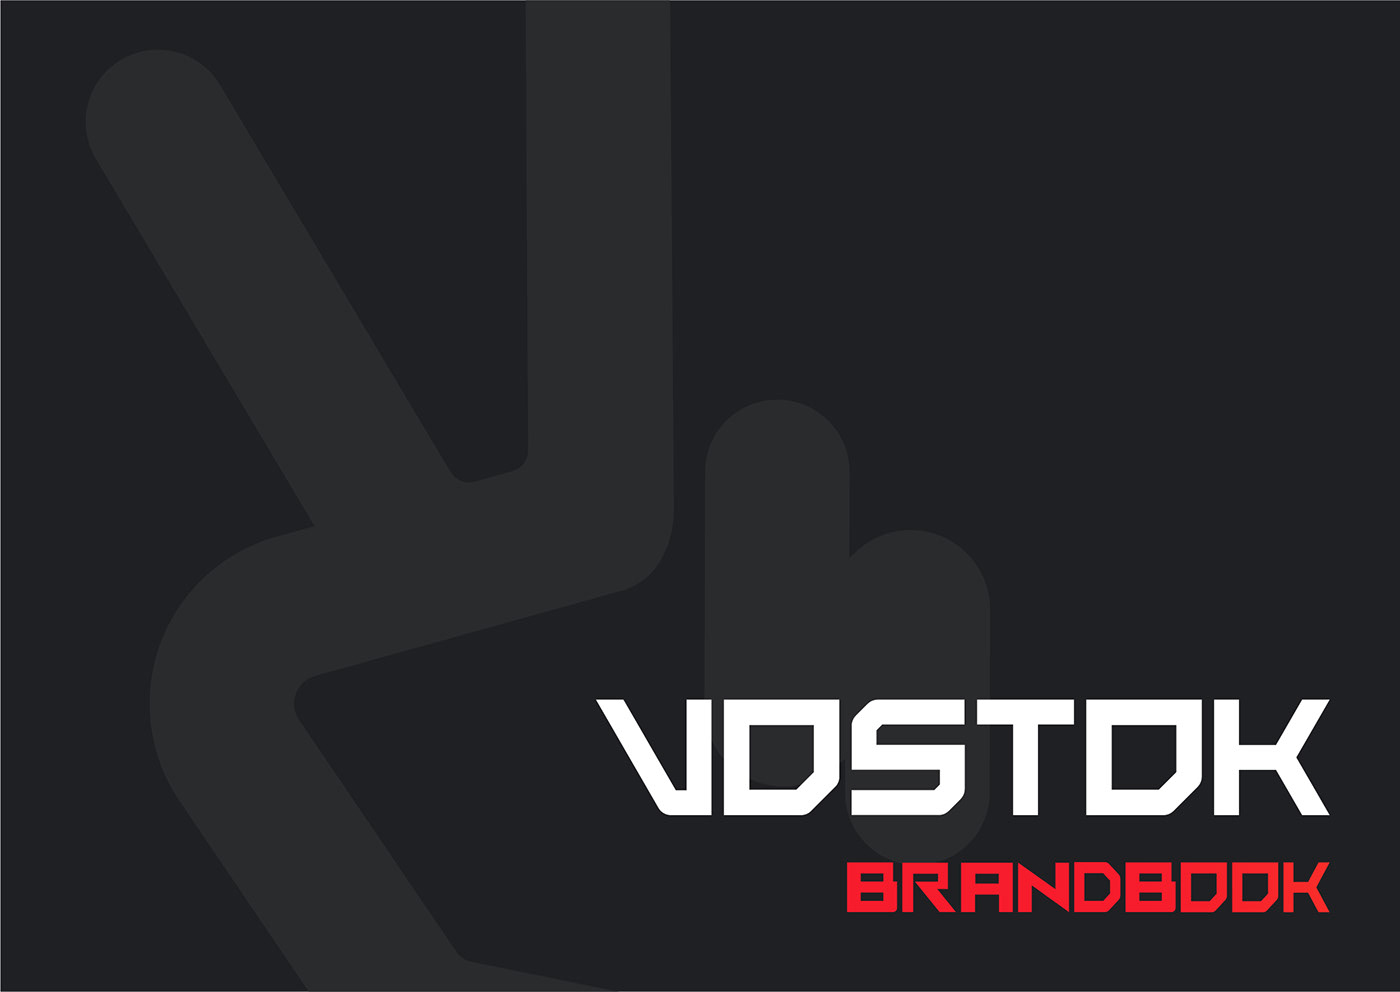 Рады вам продемонстрировать брендбук нового маркетплейса VOSTOK. Был разработан специально для ⓥСБЕР